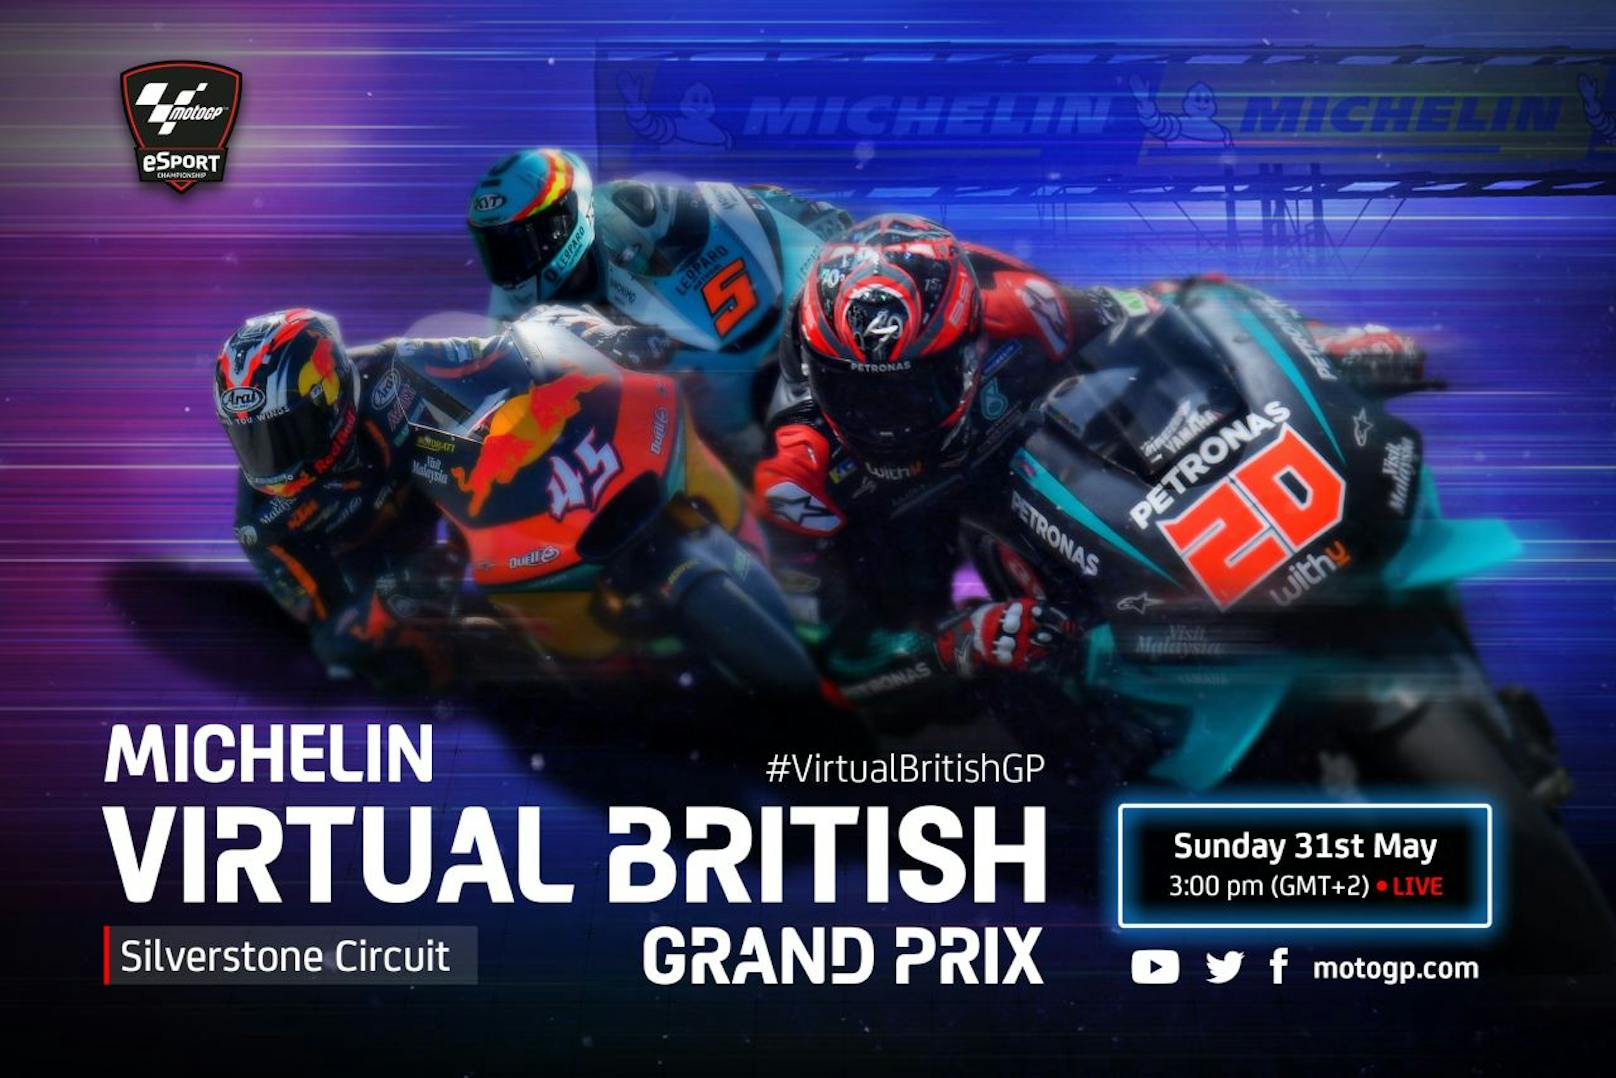 Der Michelin Virtual British Grand Prix findet am 31. Mai 2020 statt.